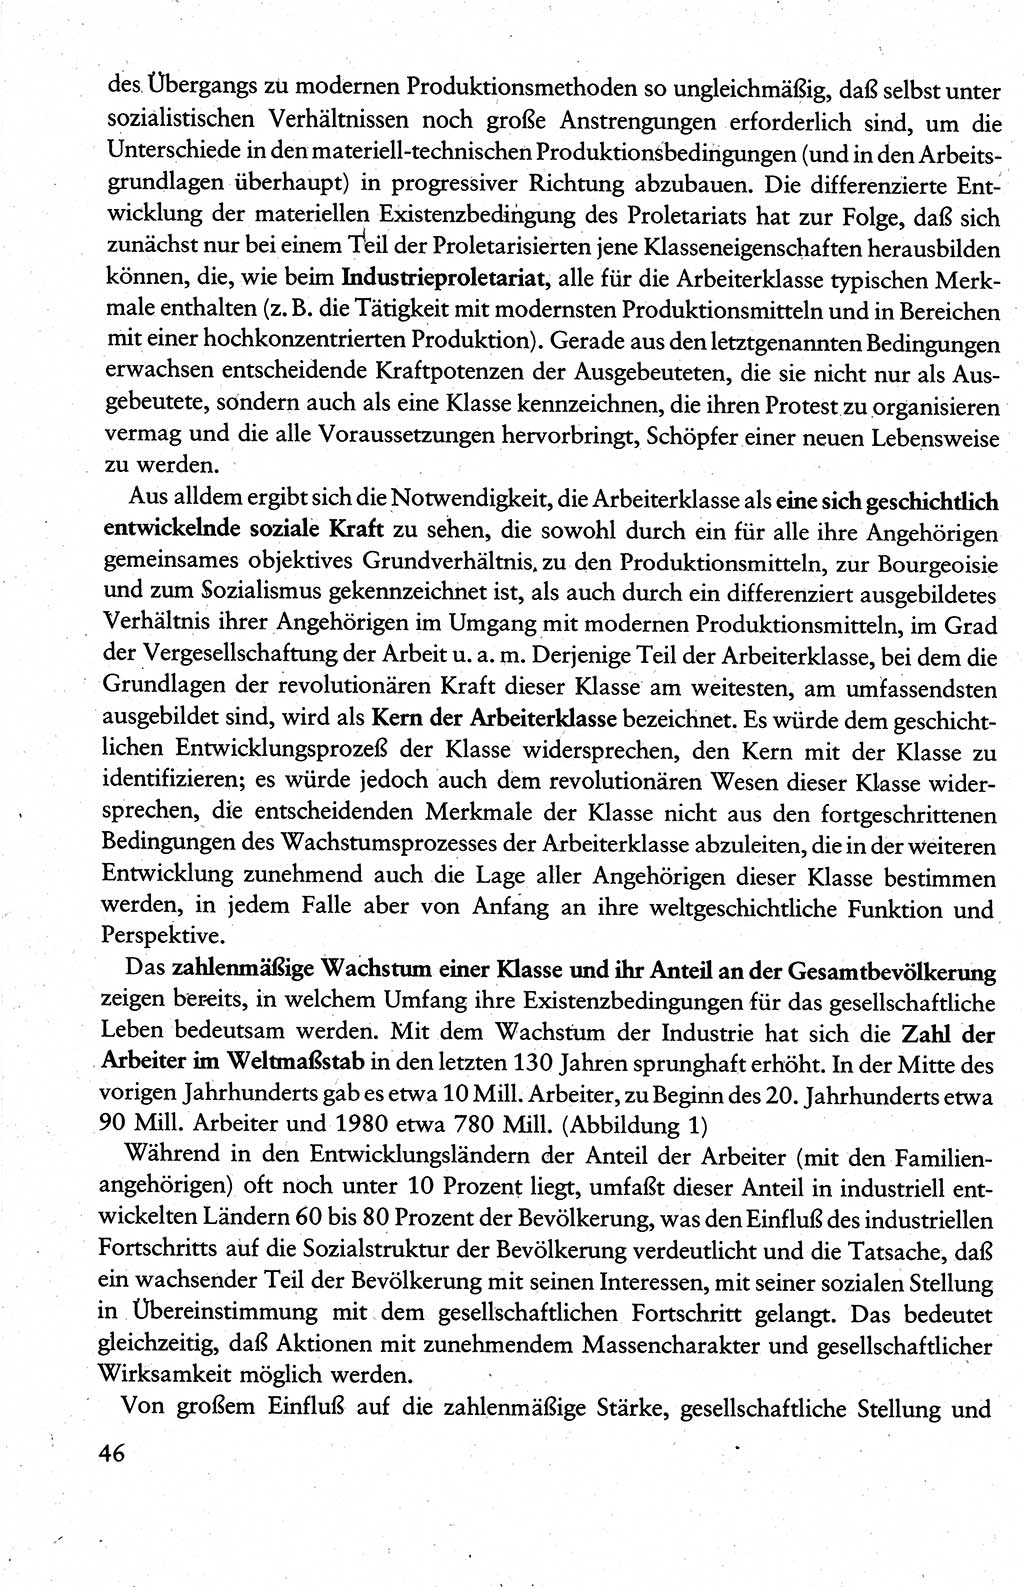 Wissenschaftlicher Kommunismus [Deutsche Demokratische Republik (DDR)], Lehrbuch für das marxistisch-leninistische Grundlagenstudium 1983, Seite 46 (Wiss. Komm. DDR Lb. 1983, S. 46)